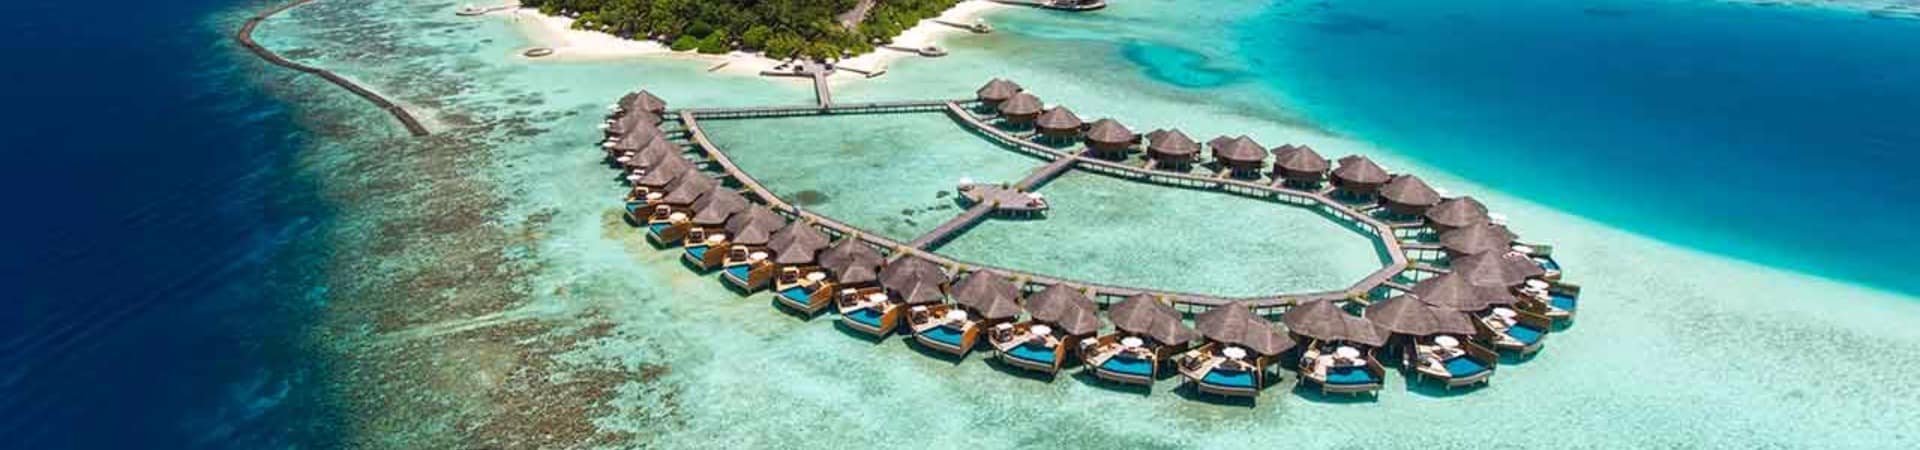 baros maldives vista aerea